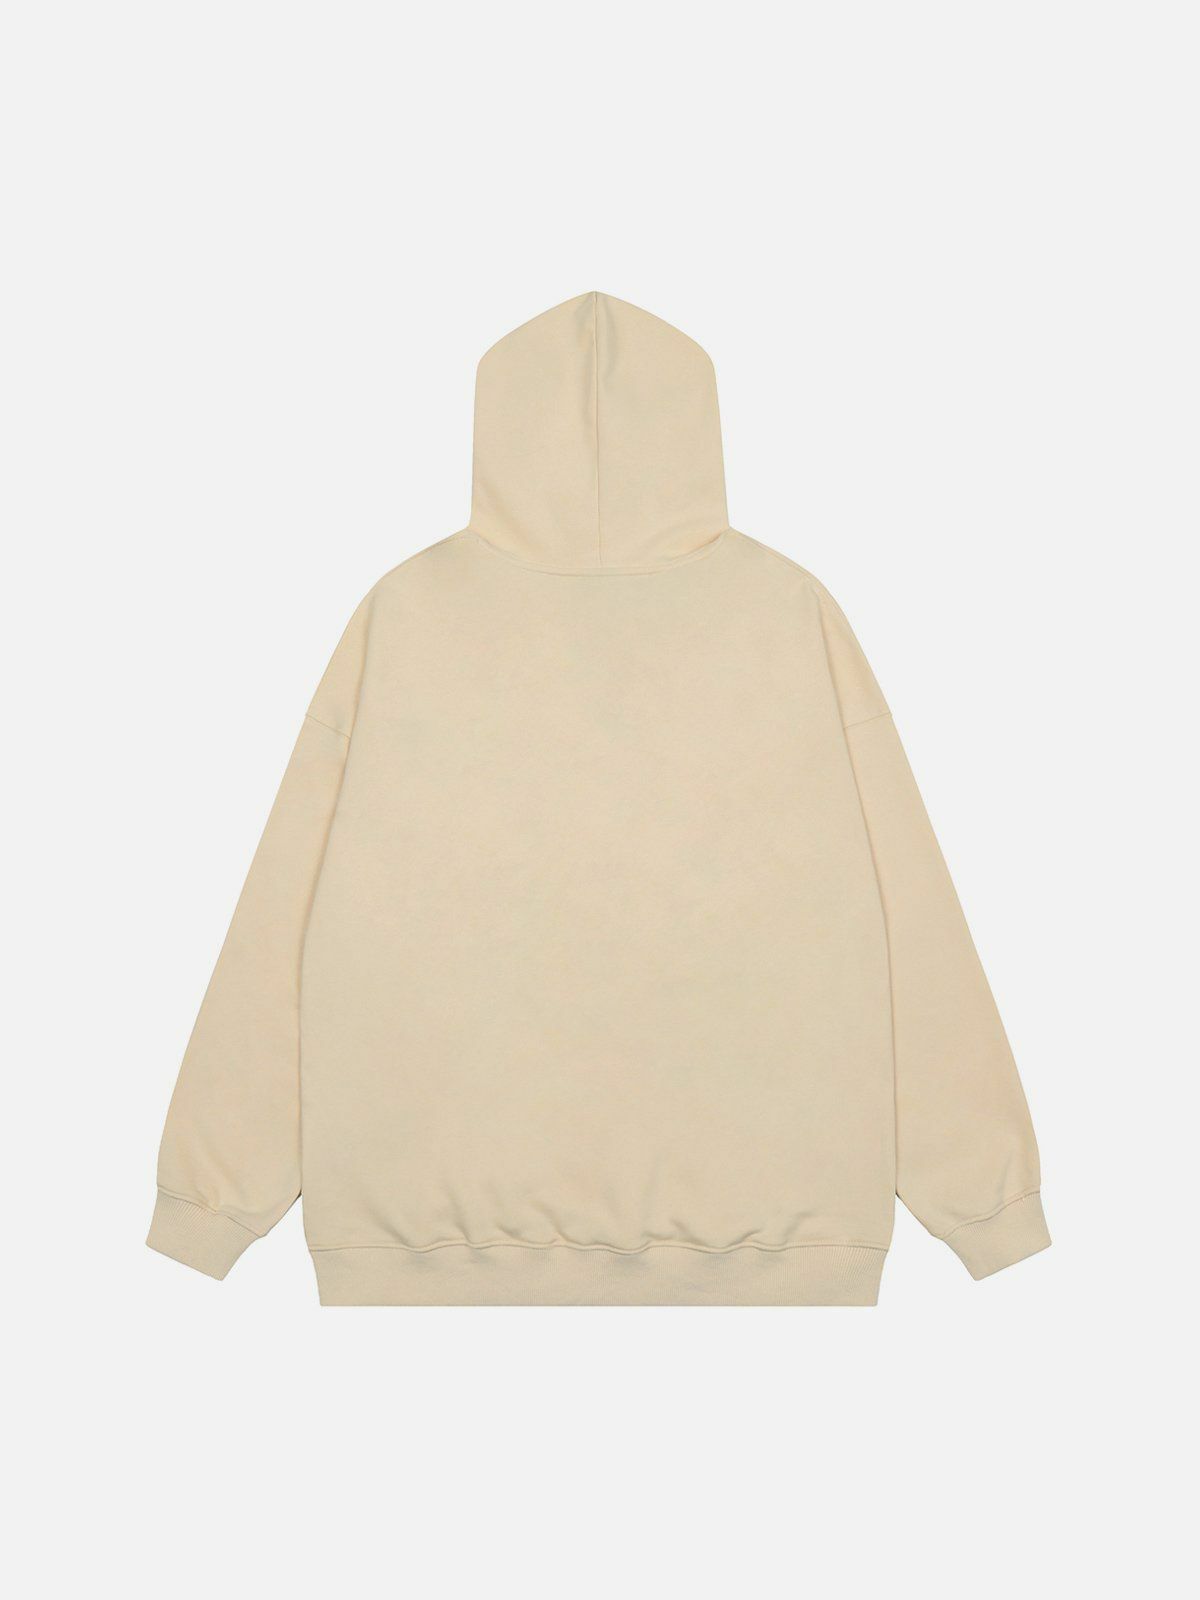 dynamic doberman print hoodie edgy streetwear 8388